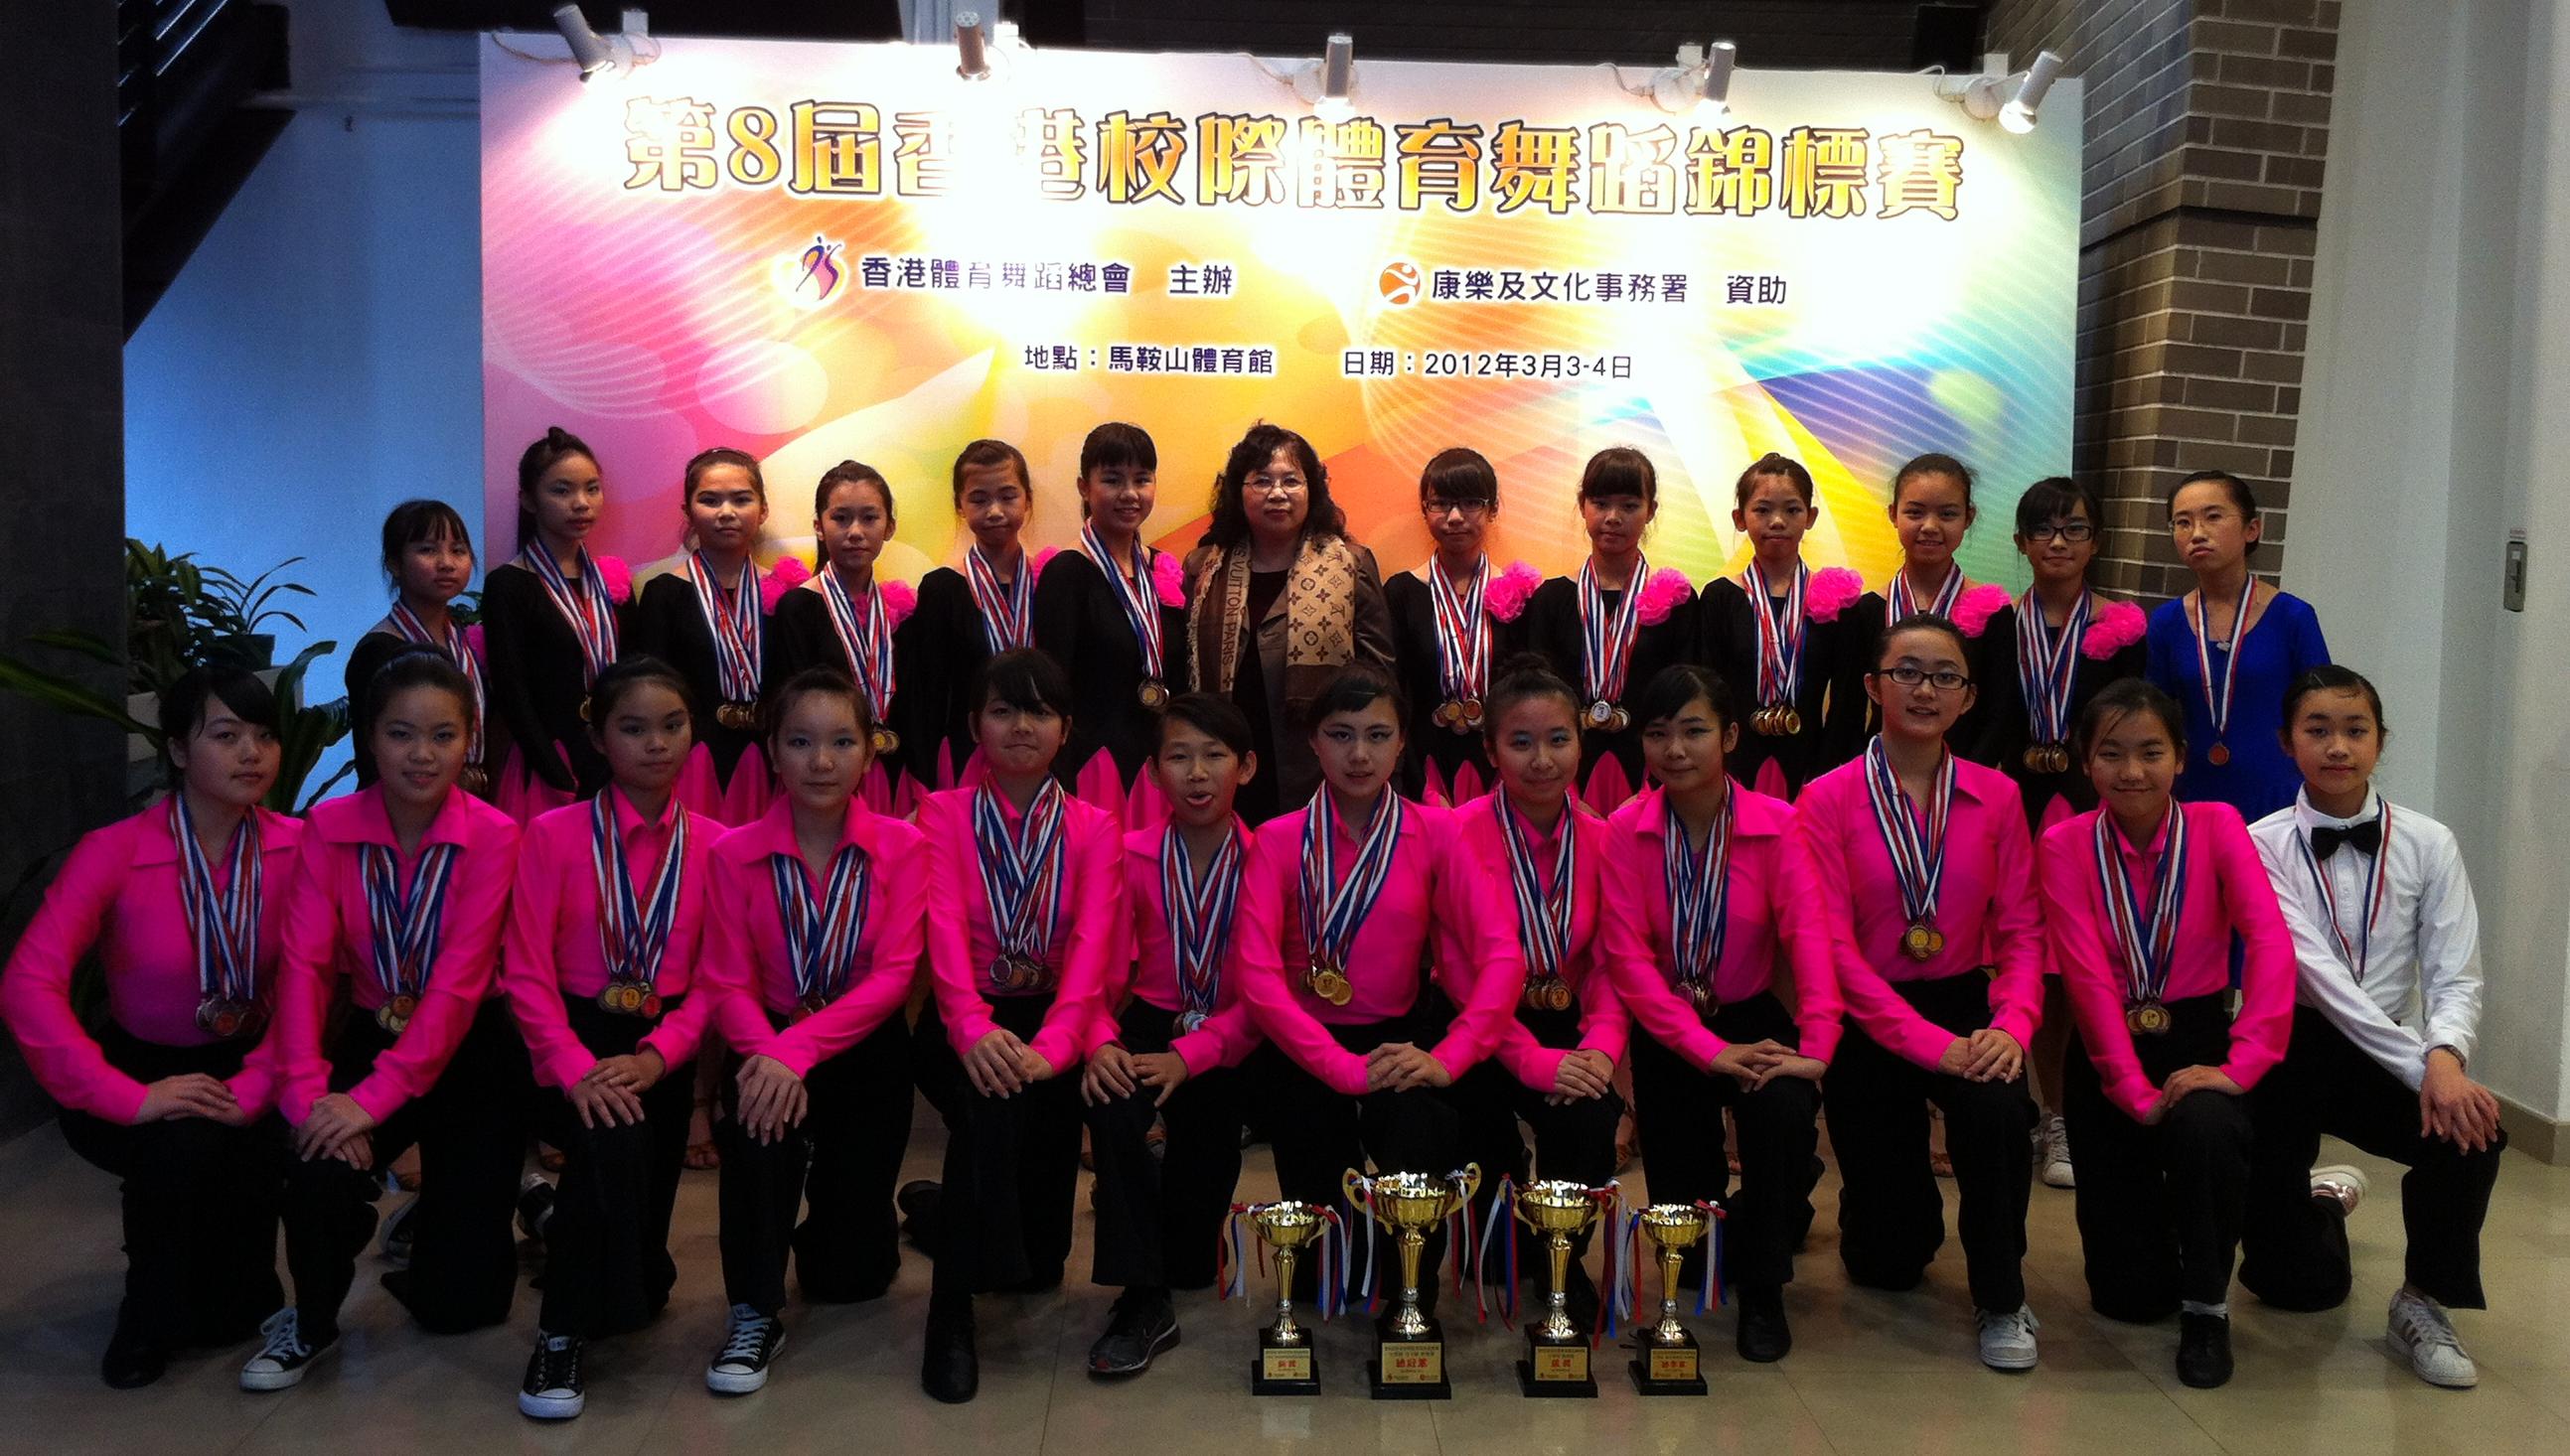 东华三院吴祥川纪念中学拉丁舞队成立仅仅一年多已获奖无数。